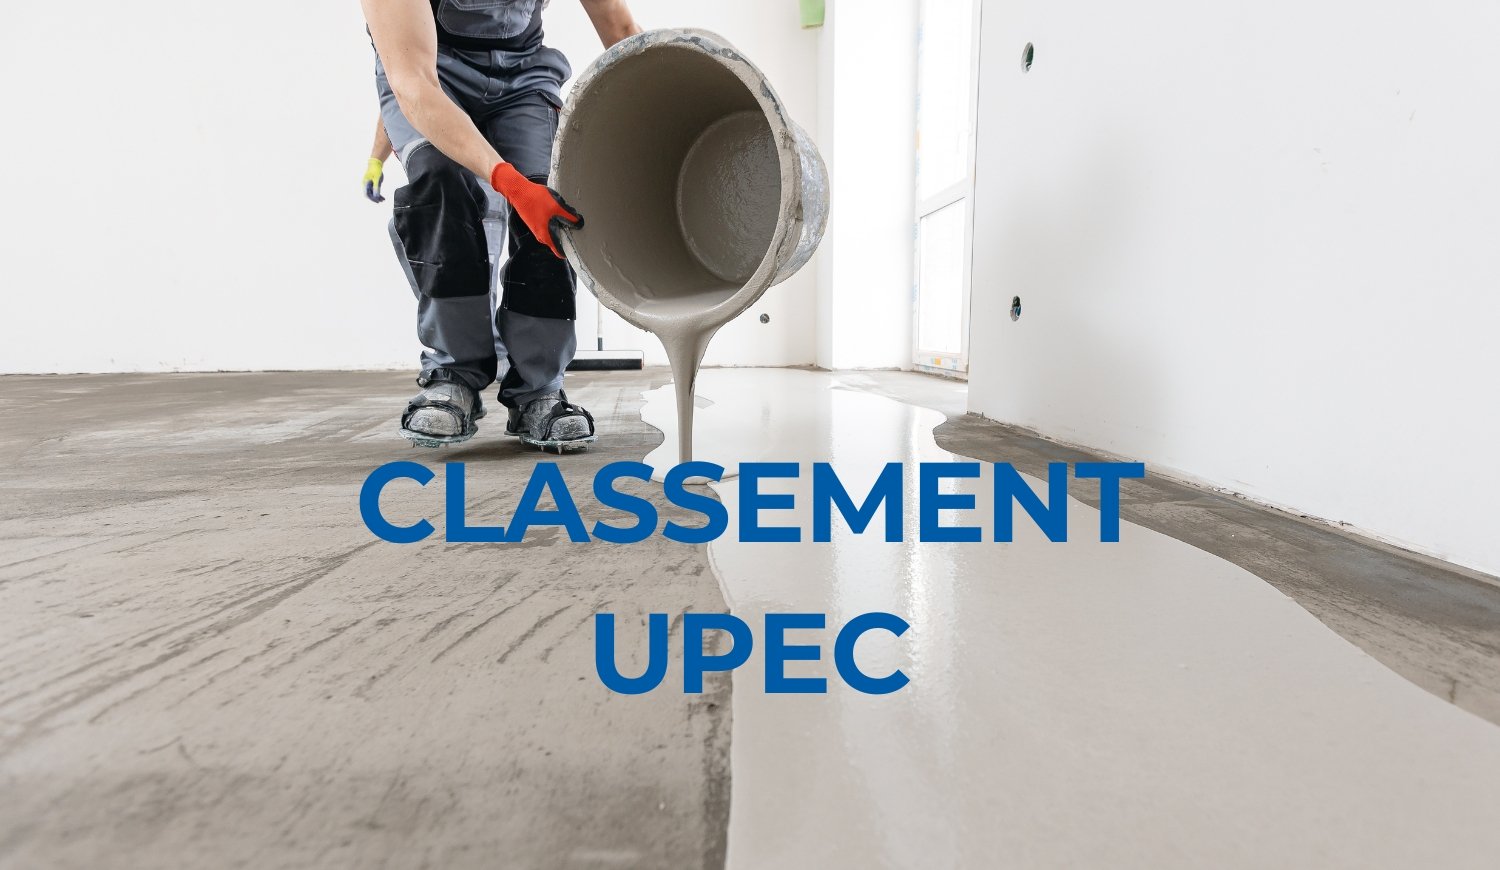 Classement UPEC et chape fluide : quel lien ?